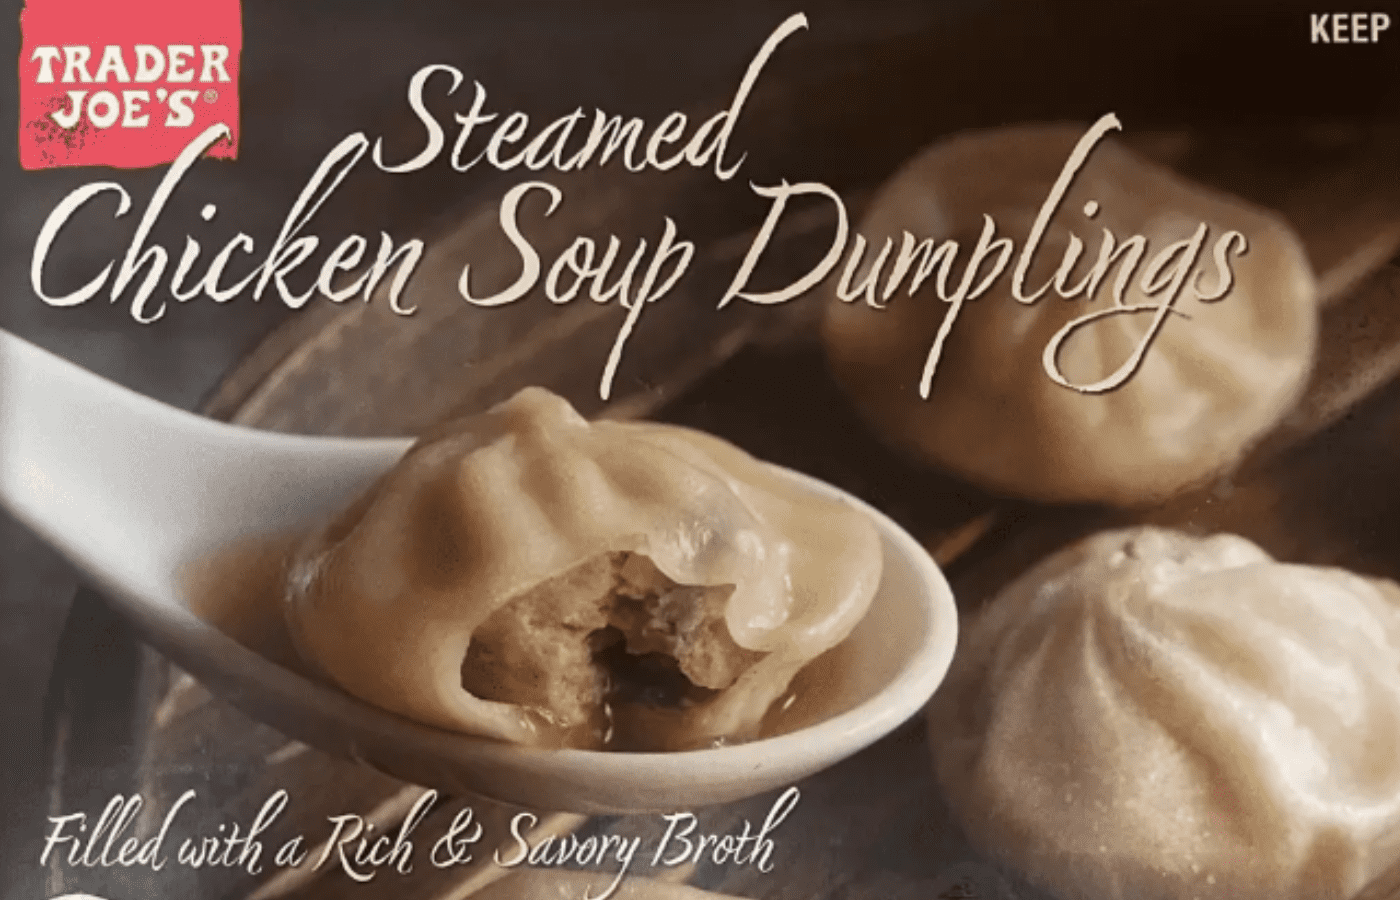 MY VIRAL TRADER JOE'S ELEVATED CHICKEN SOUP DUMPLINGS HACK 🥟🍜🔥 This, soup dumplings